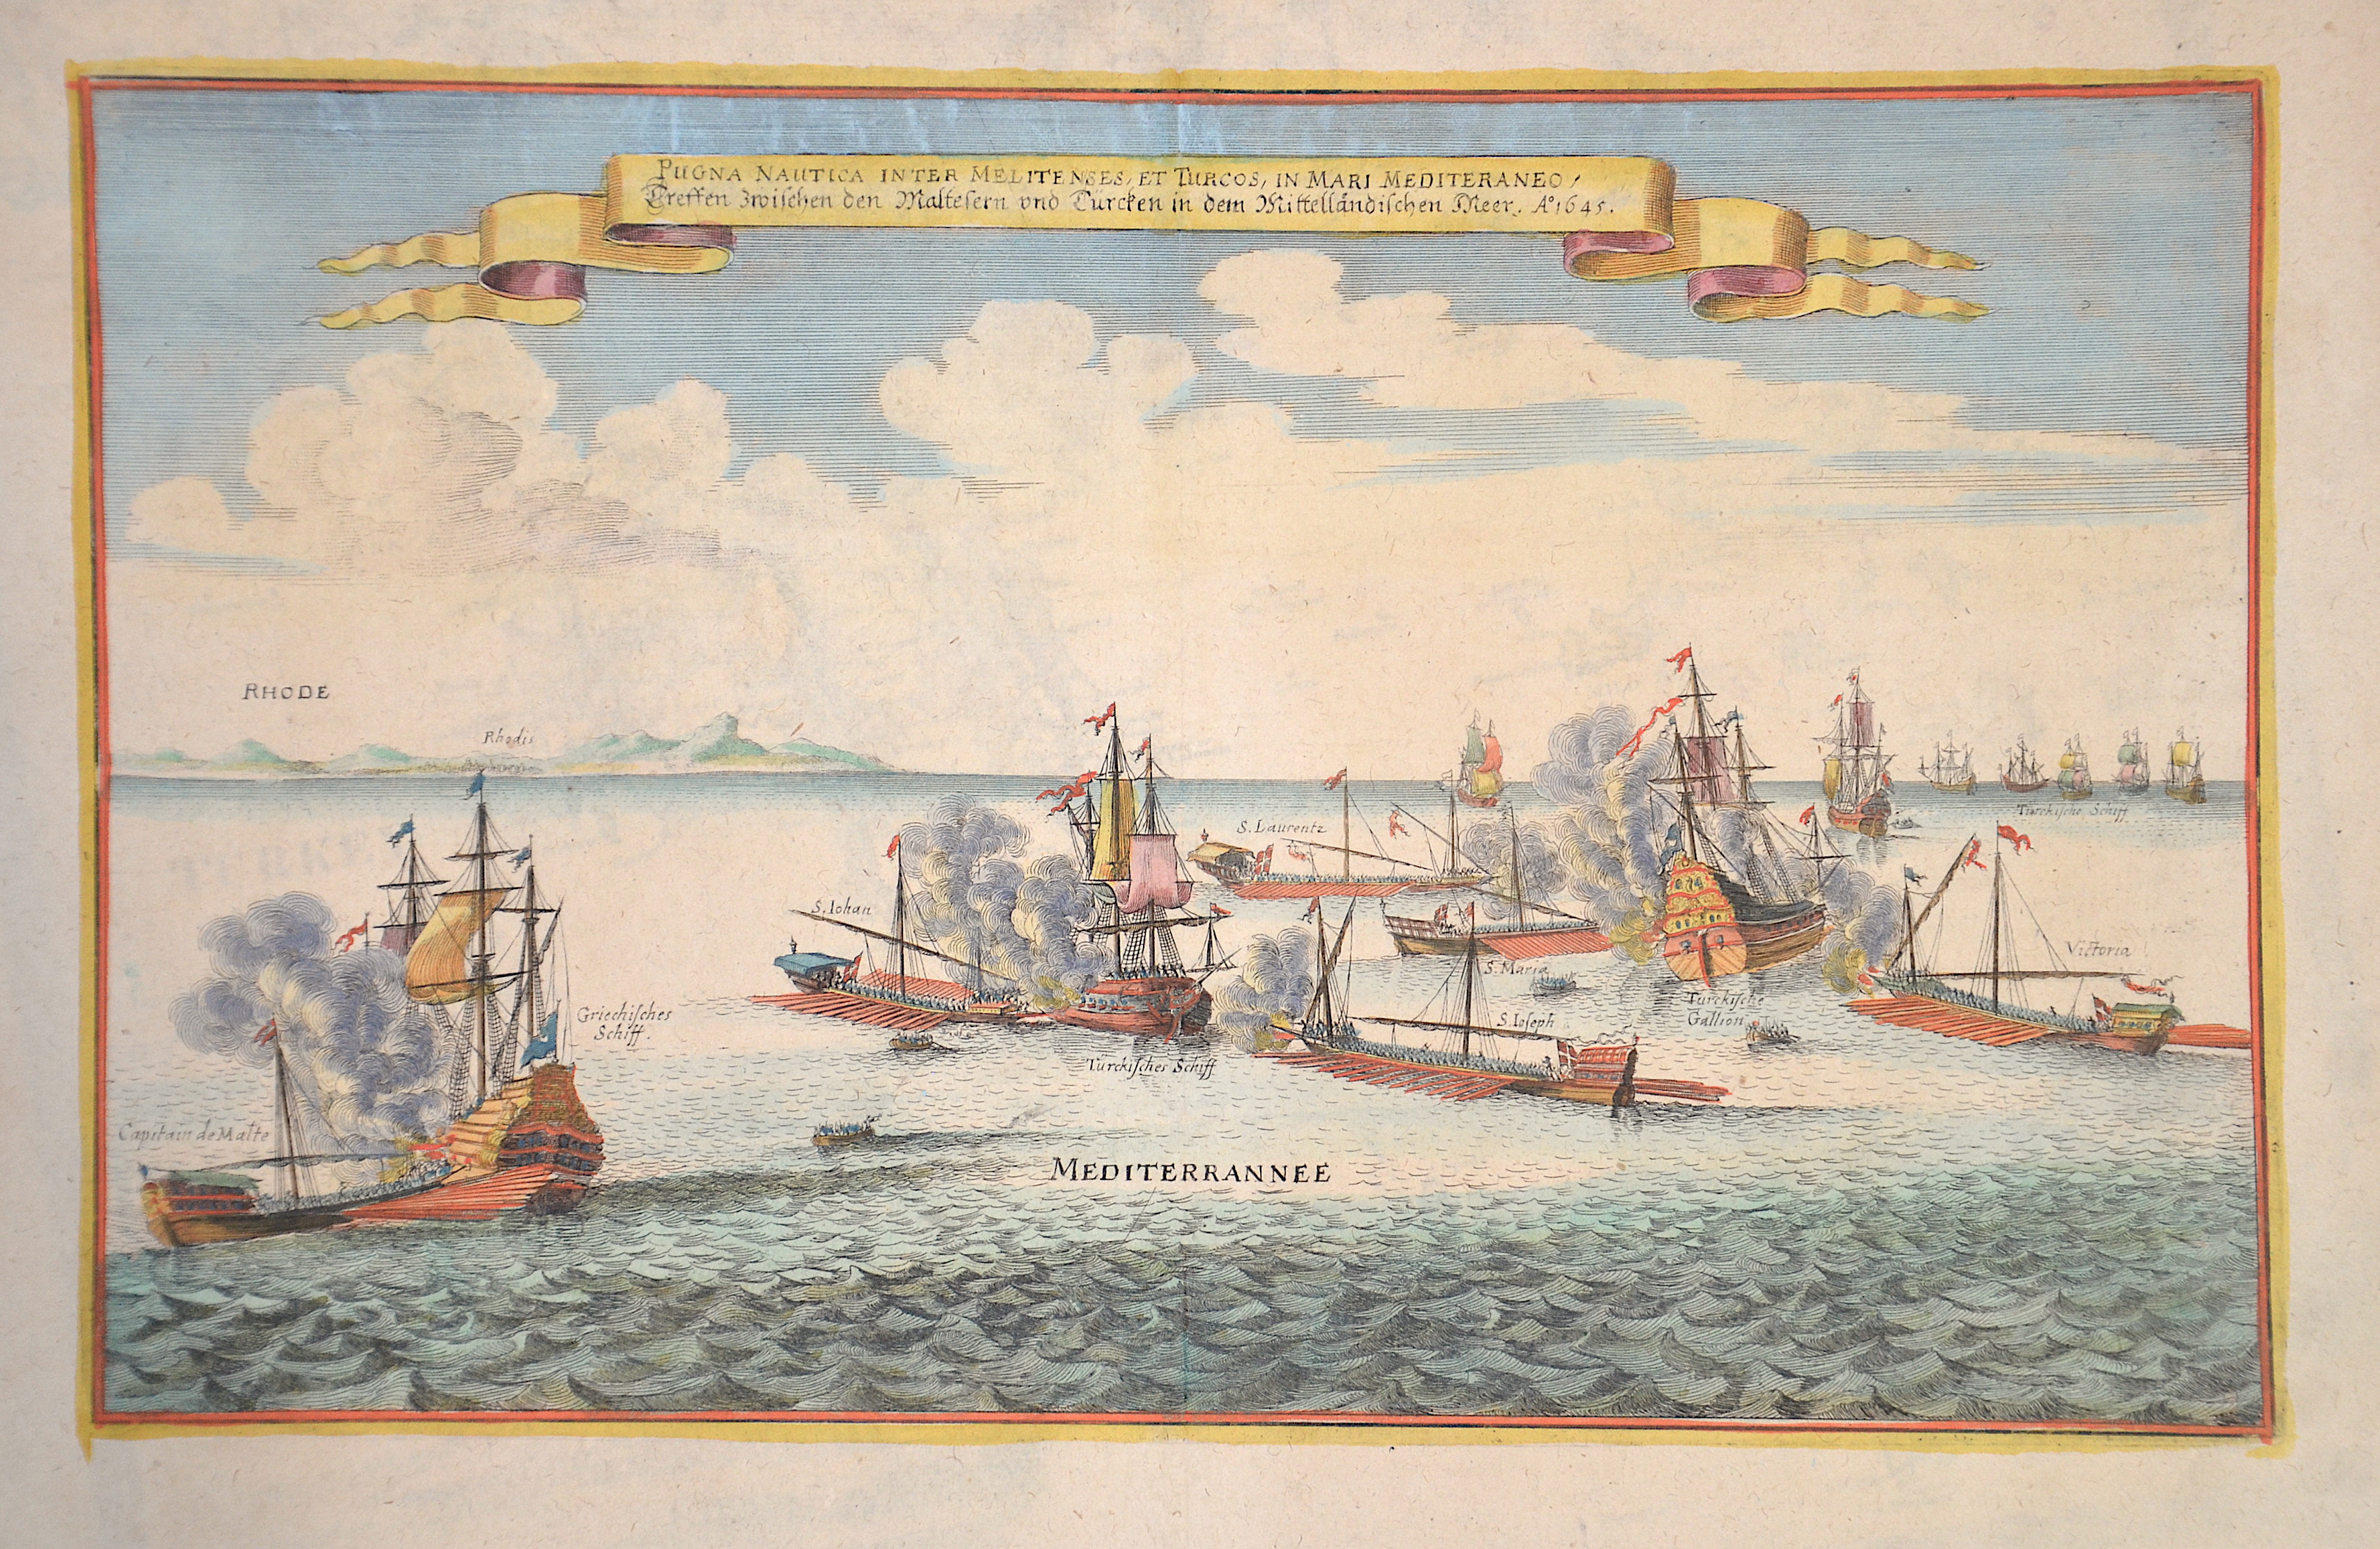 Merian  Pugna Nautica inter Melitenses, et Turcos, in Mari Mediteraneo / Treffen zwischen den Maltesern und Türcken in dem Mittellädischen Meer. Anno 1645.